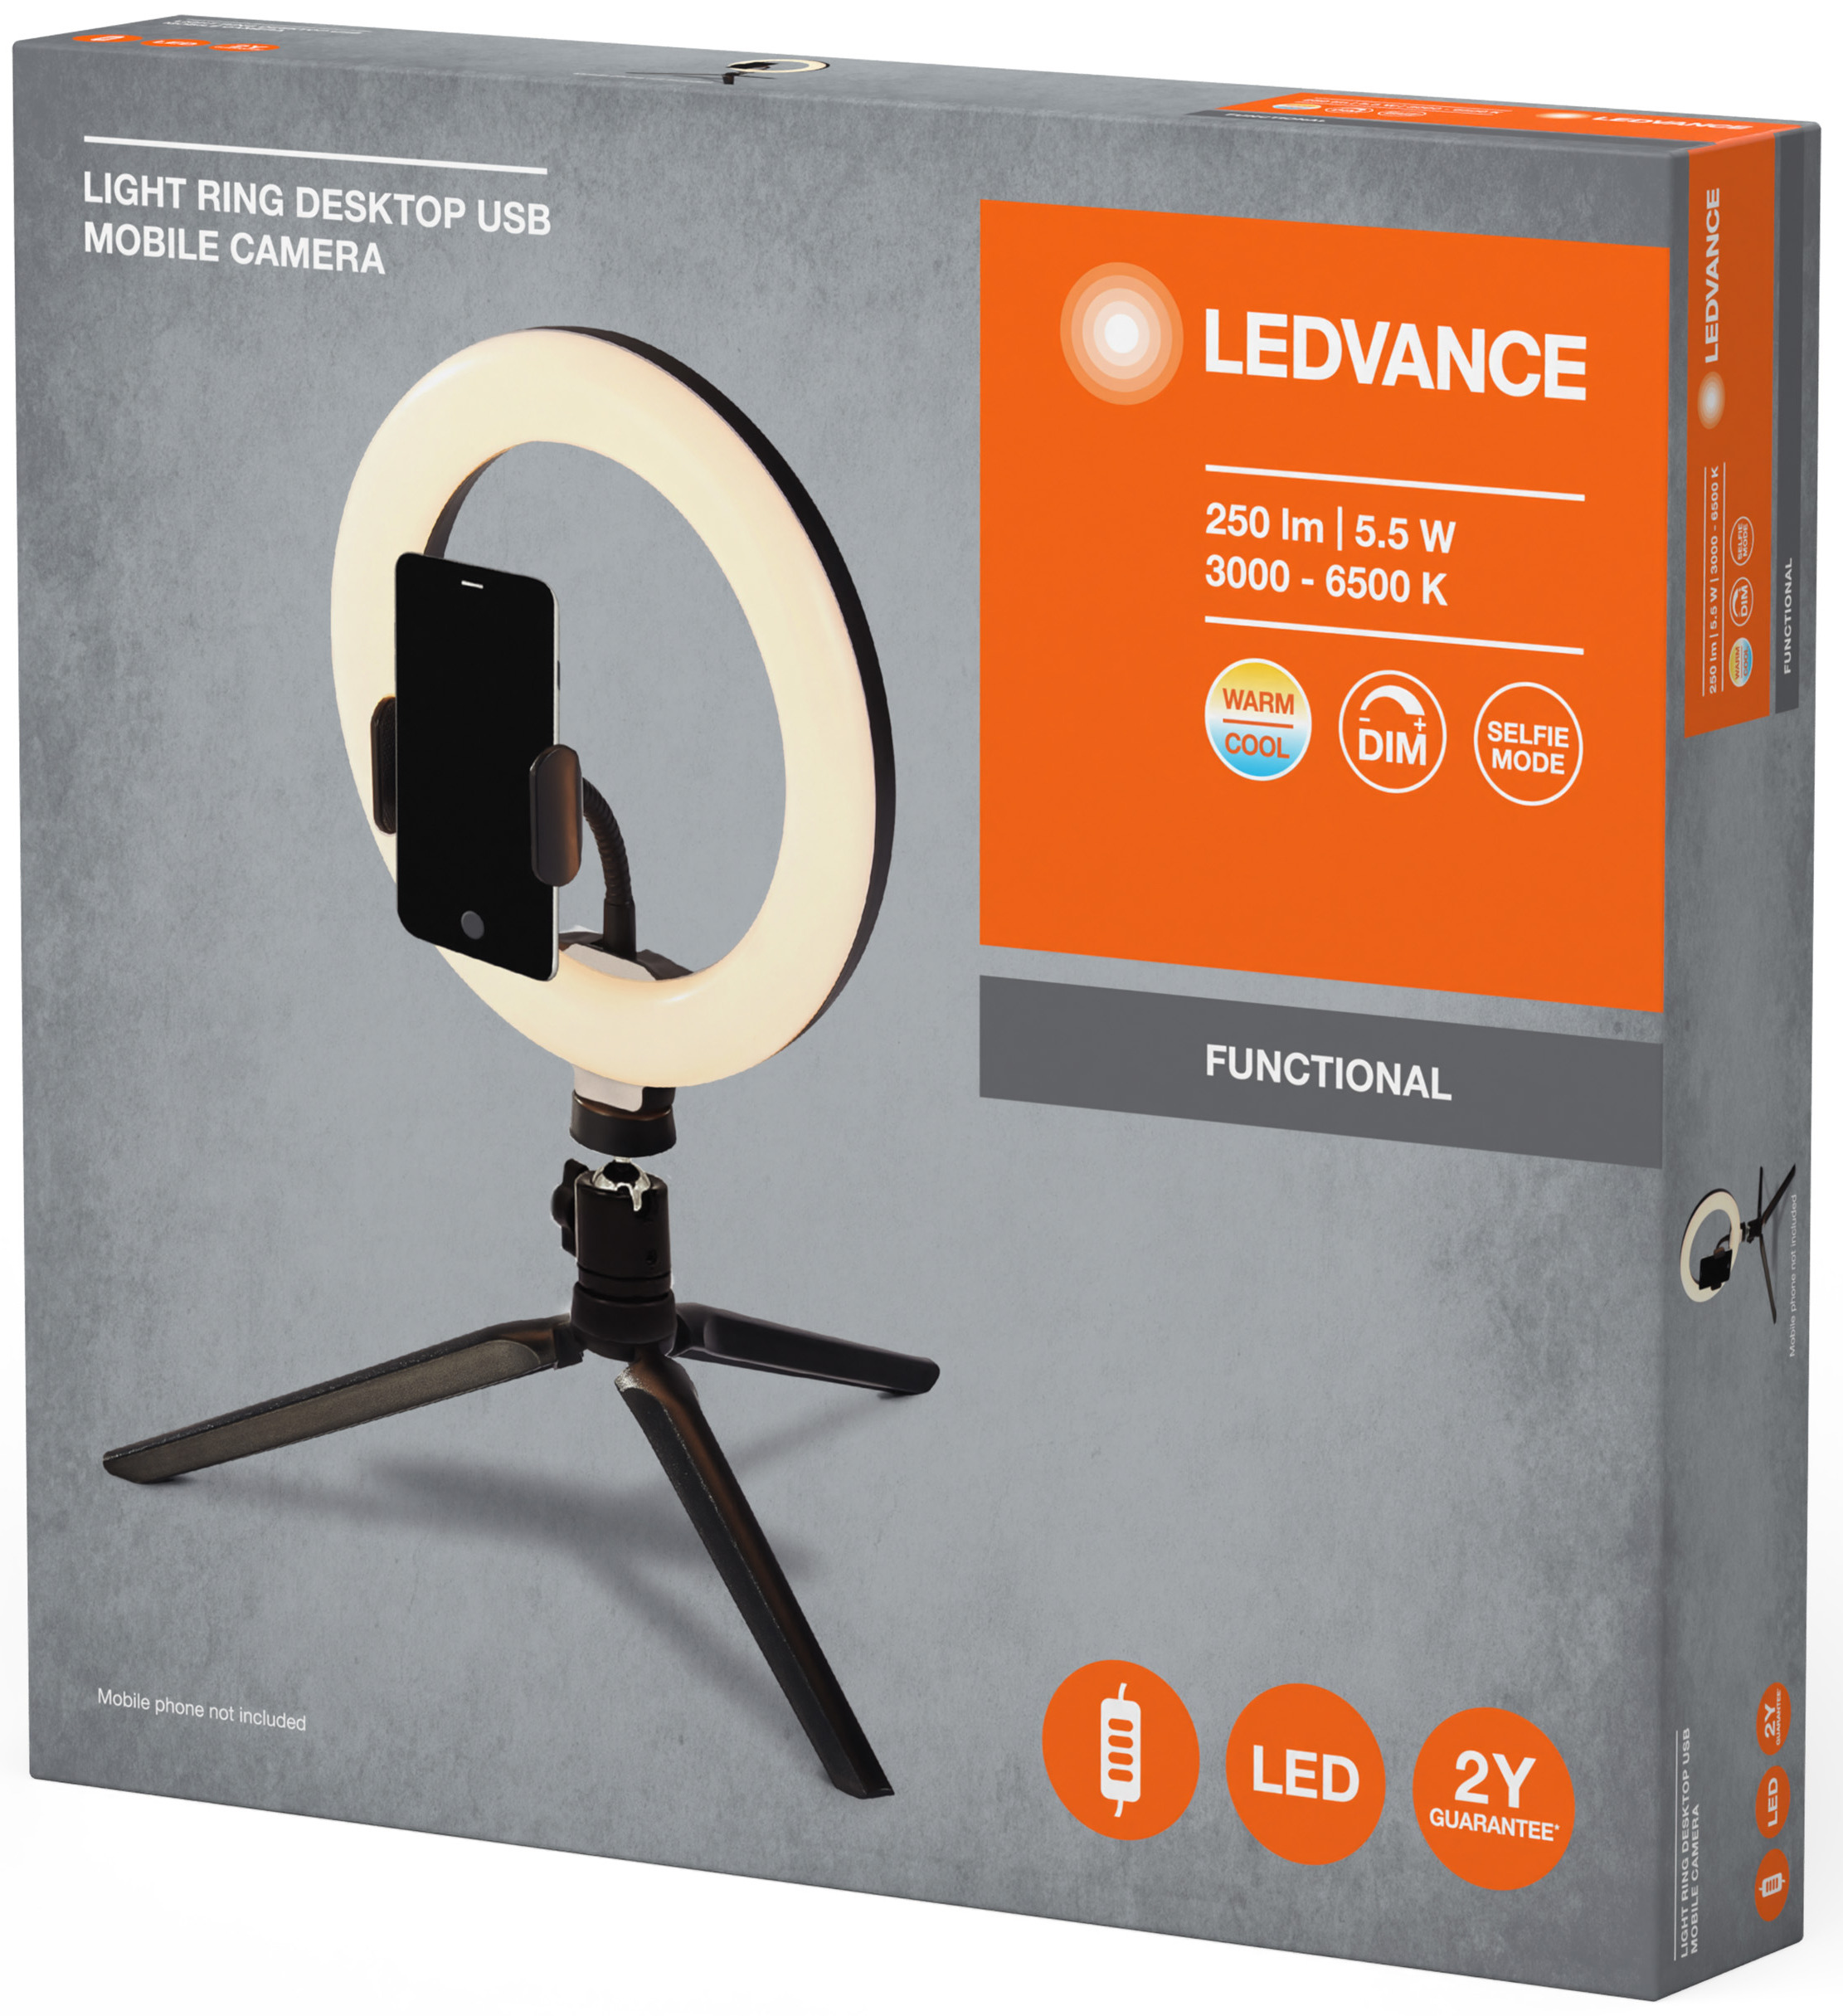 Светильник кольцевой Ledvance Mobile Camera Light Ring Desktop Usb (4058075666870) характеристики - фотография 7